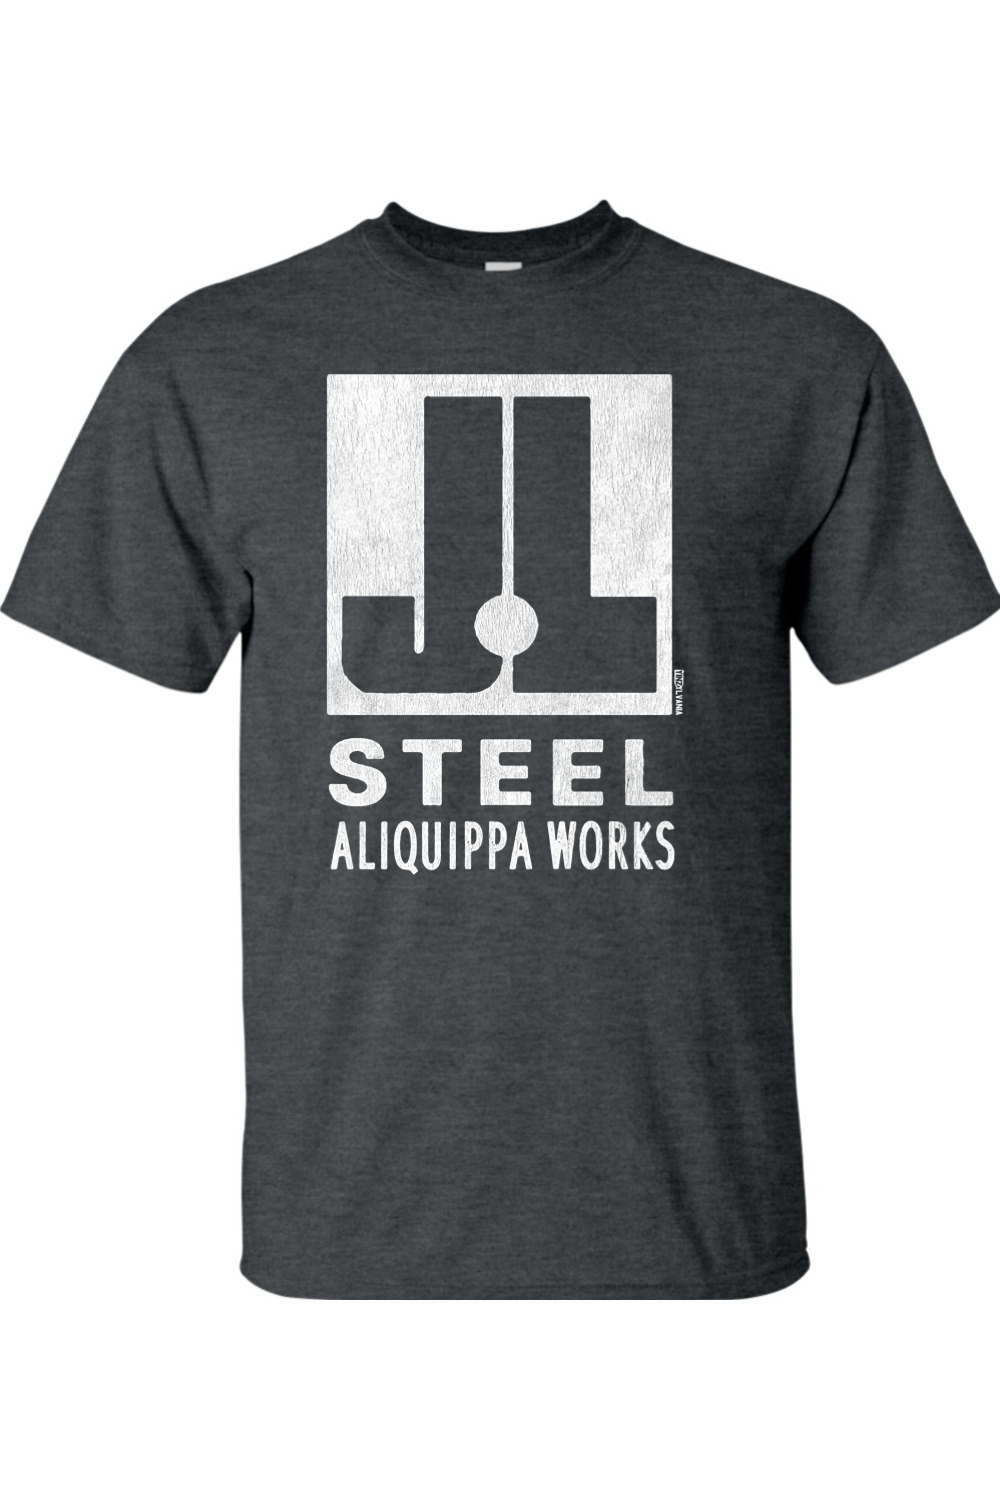 J&L Steel - Aliquippa Works - Big & Tall T-Shirt - Yinzylvania